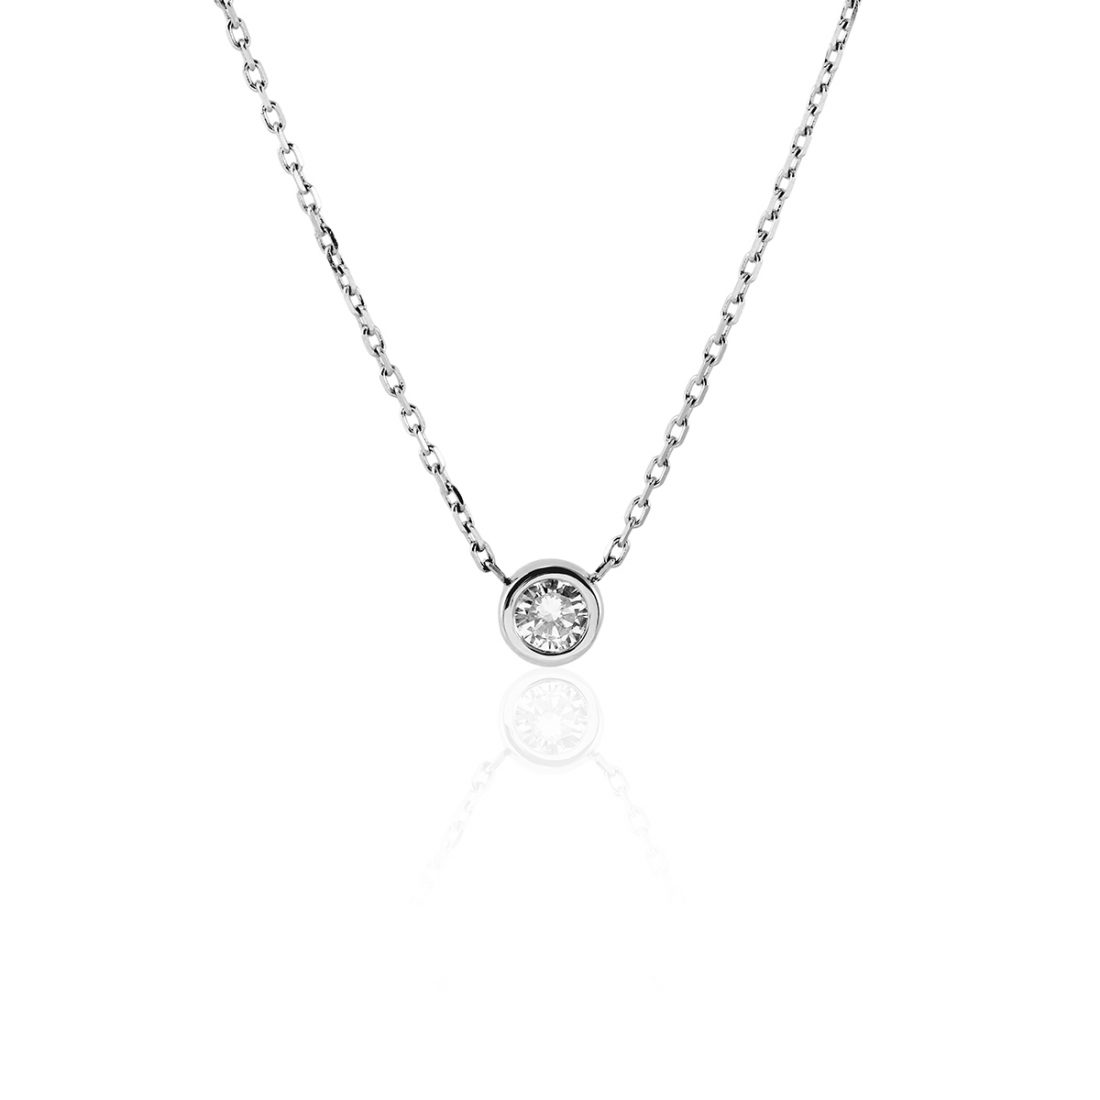 Diamond necklace | Zmay Jewelry